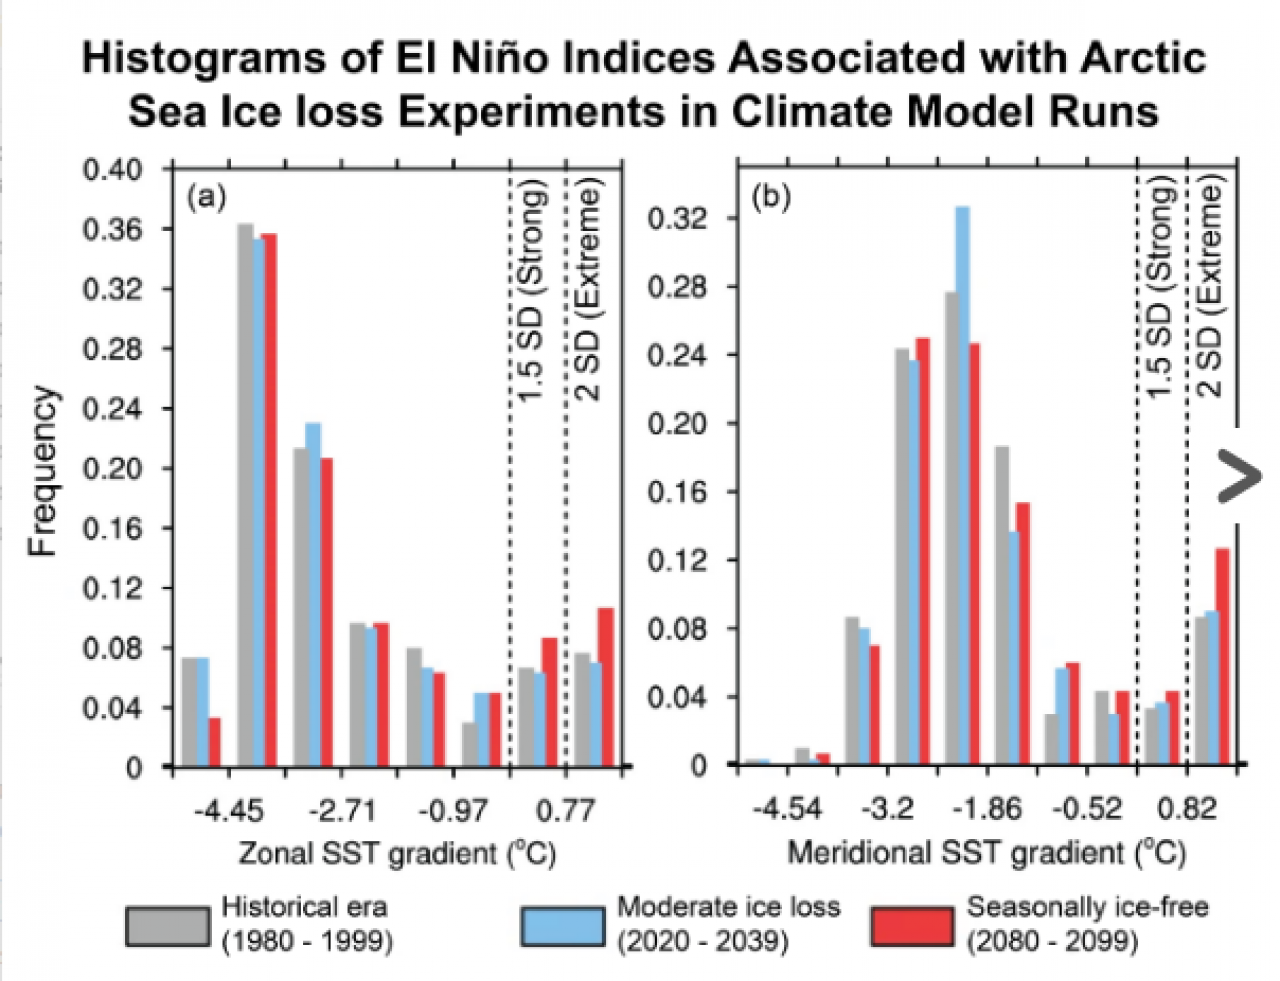 Istogrammi degli indici di El Nino associati agli esperimenti sulla perdita di ghiaccio marino artico nei modelli climatici - Credit Jiping Lui et al. 2022, adattato da NSIDC